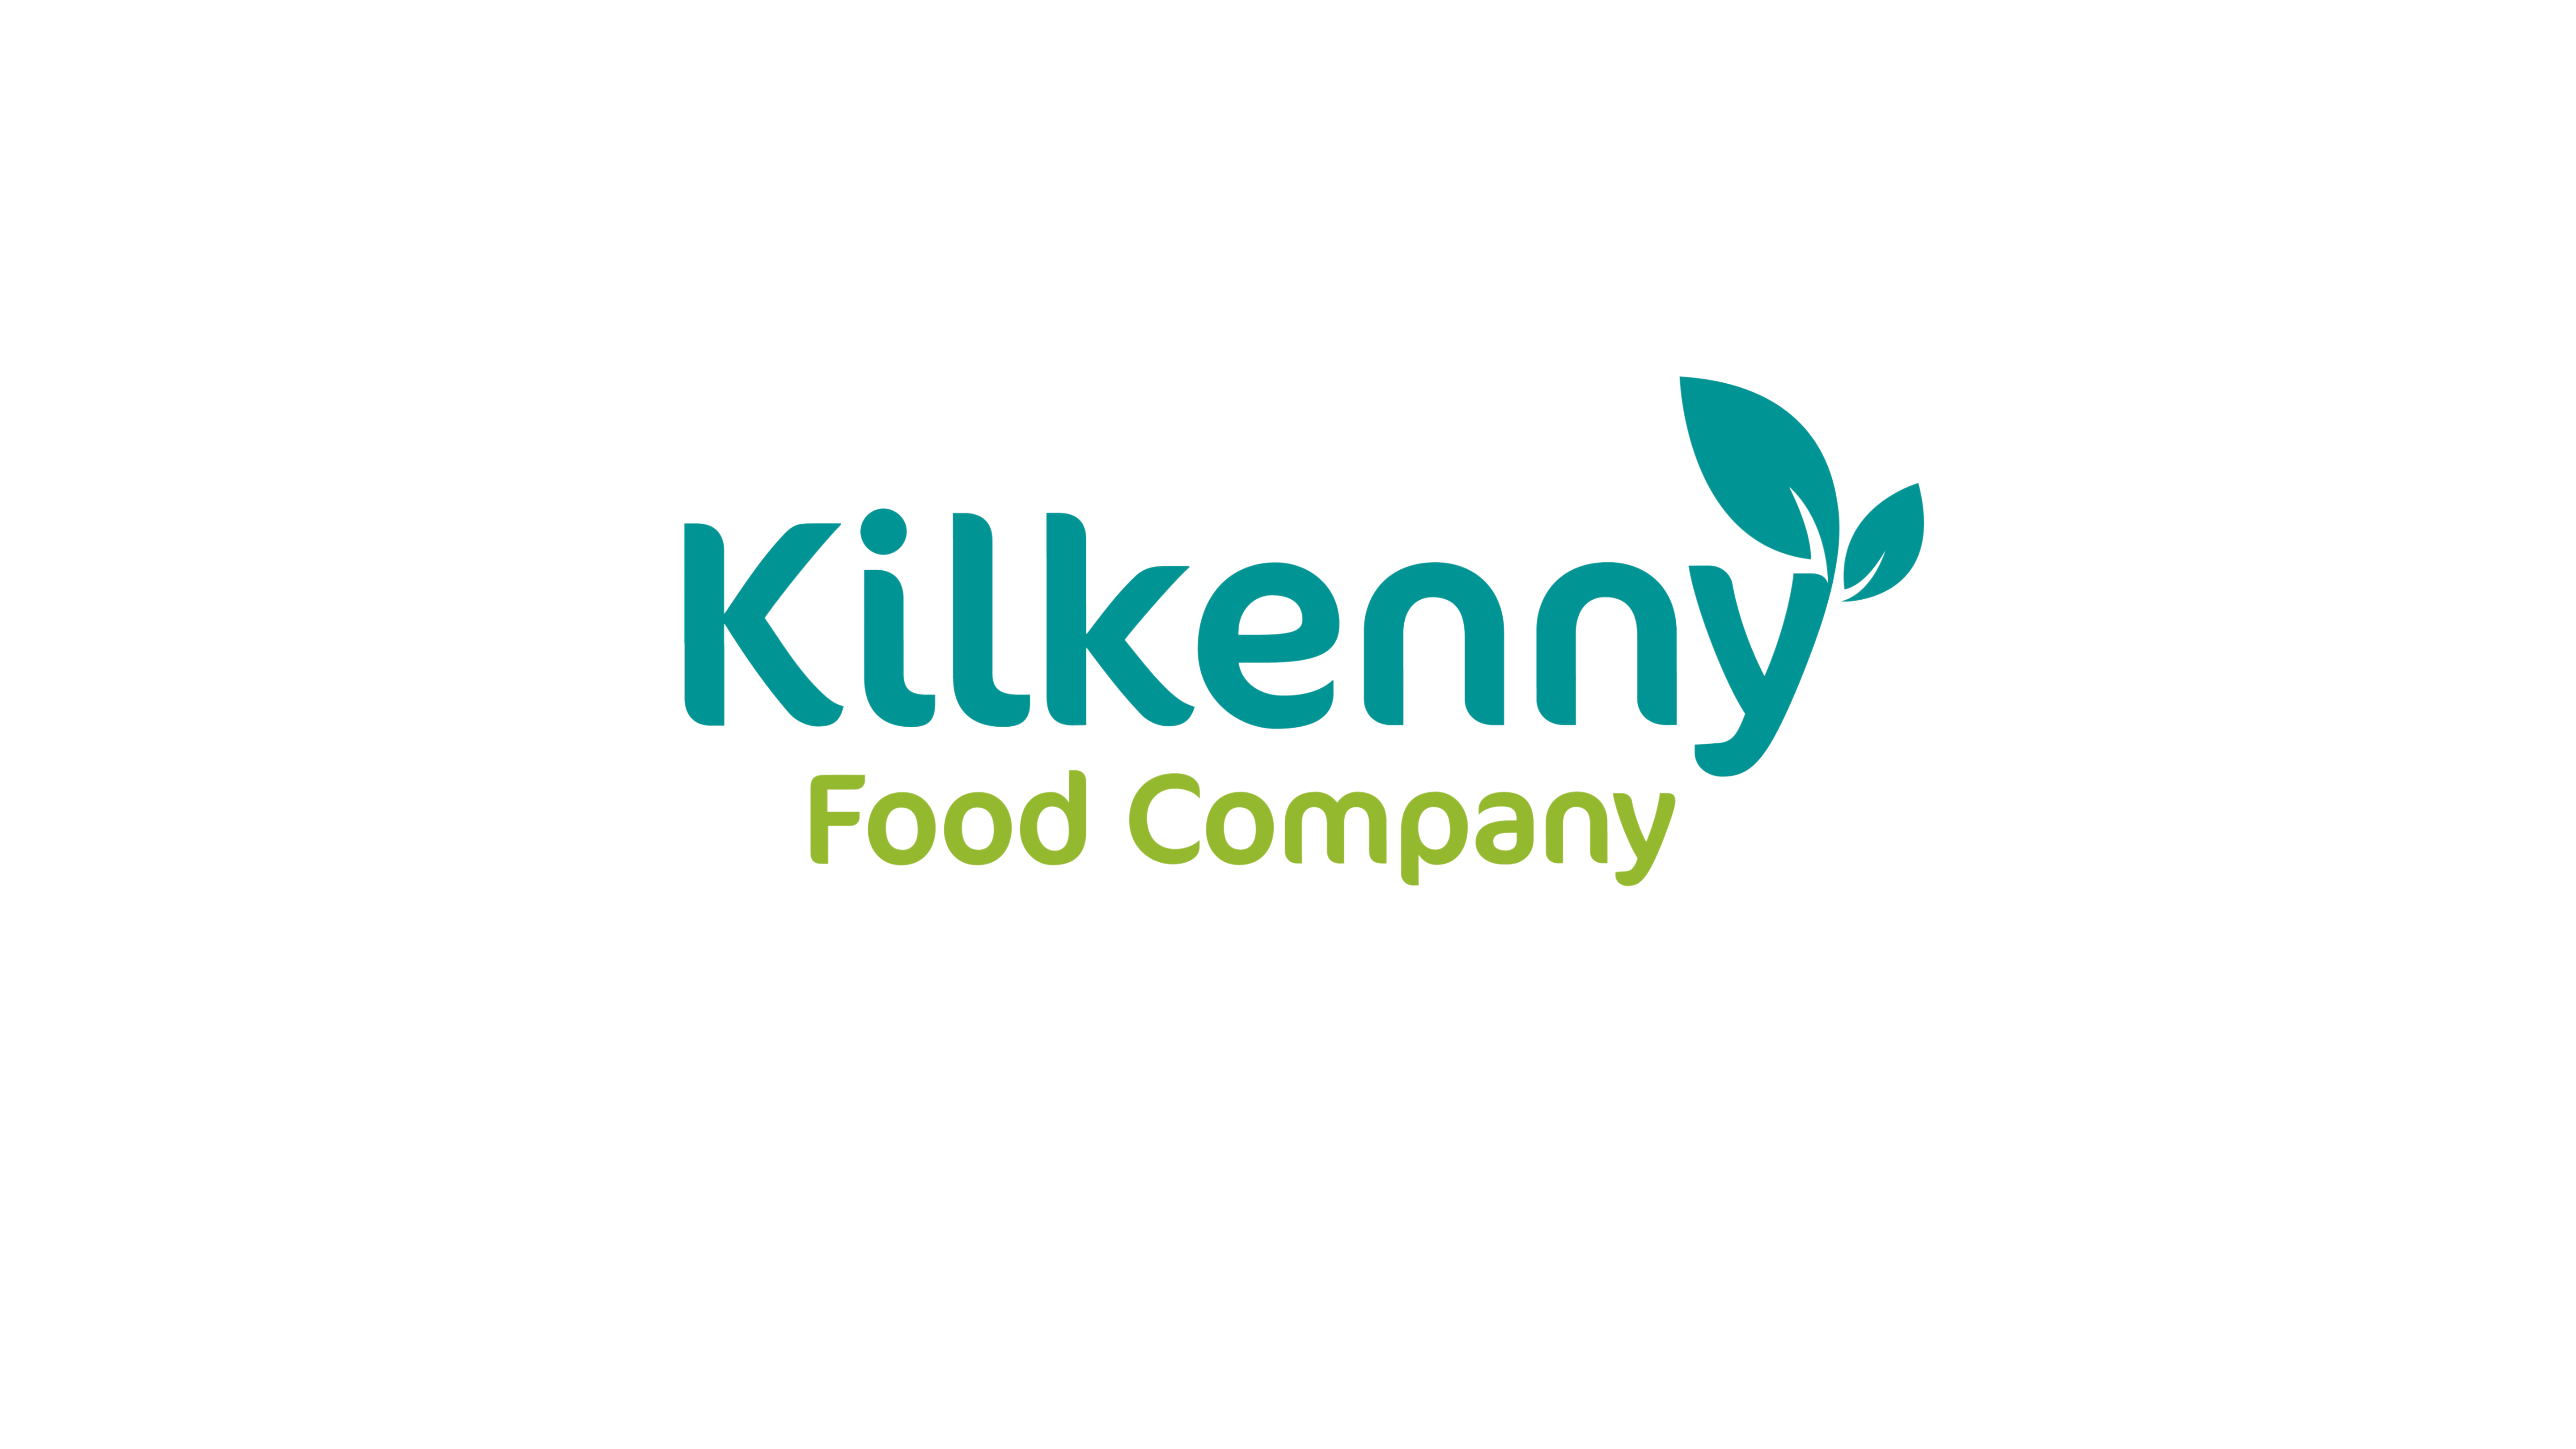 The Kilkenny Food Company